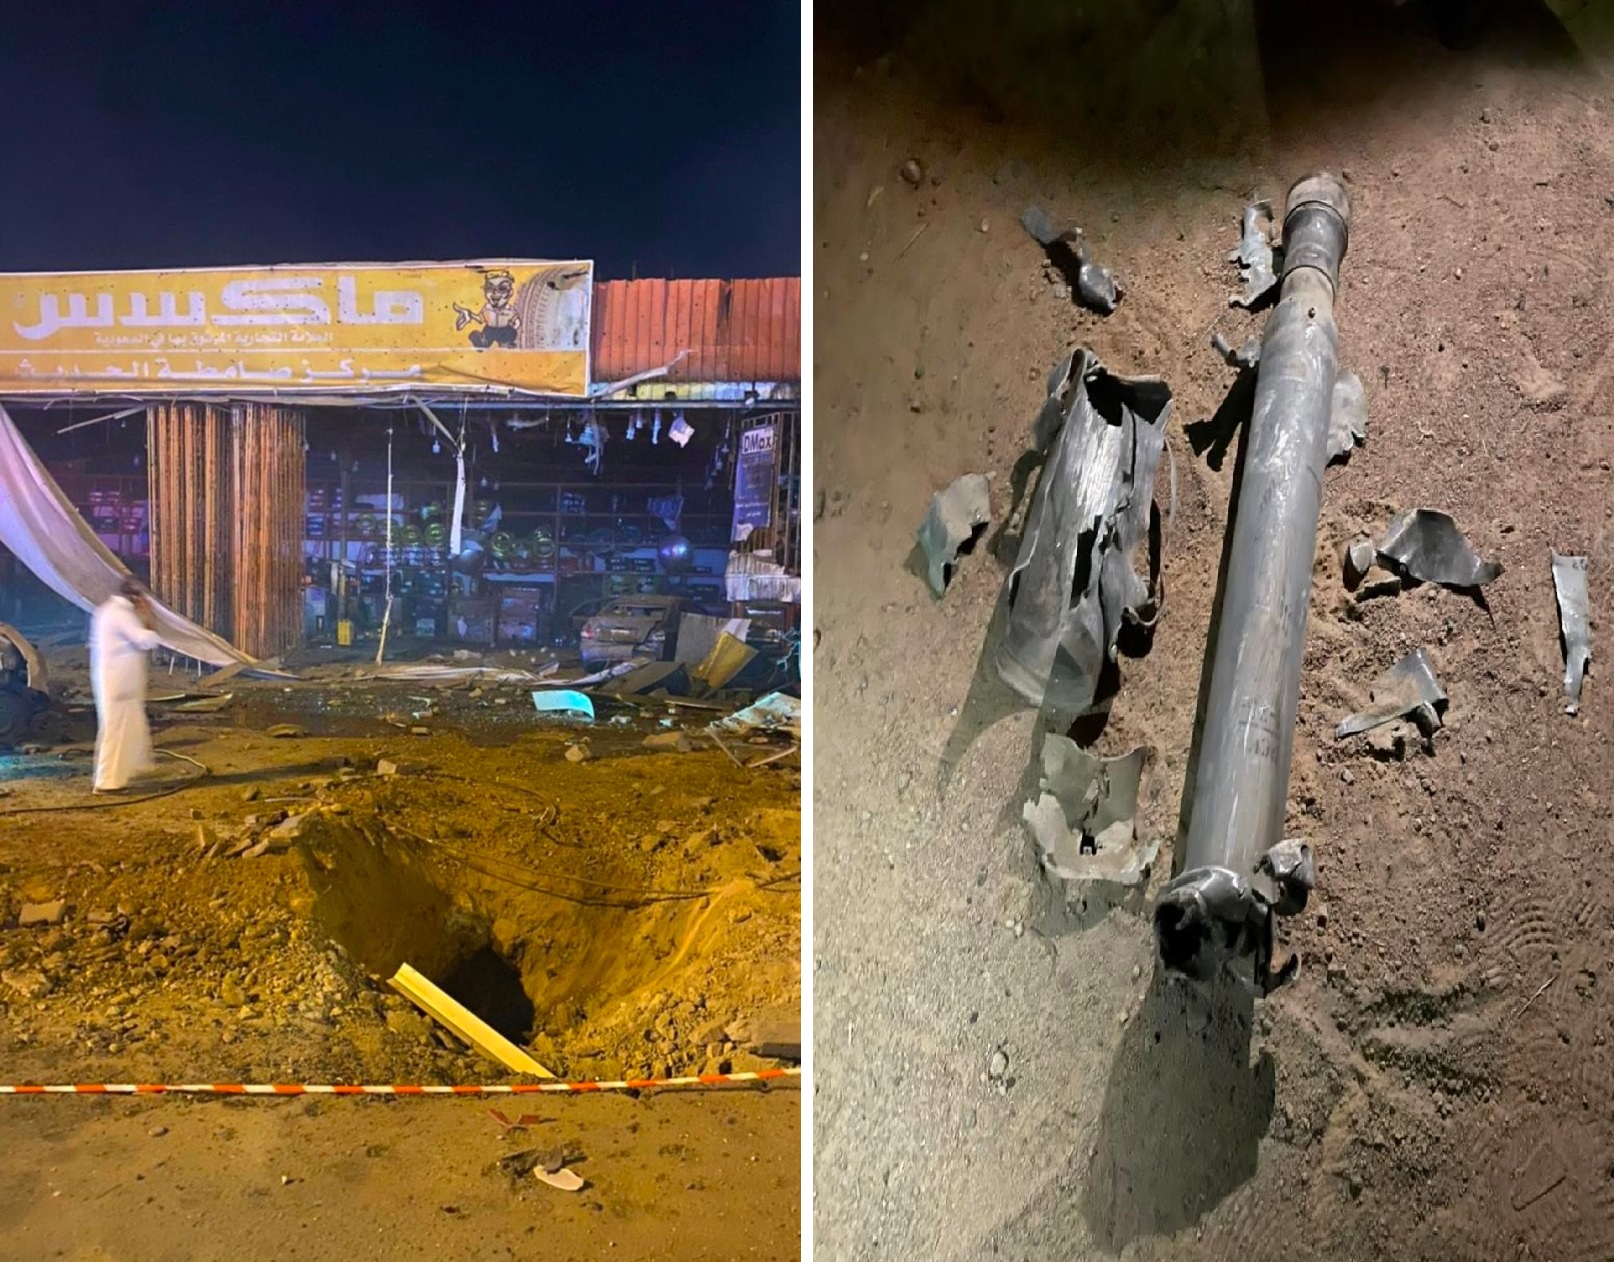 التحالف : وفاة 2 من المدنيين بعد سقوط مقذوف على إحدى الورش في صامطة.. والكشف عن جنسيتيهما